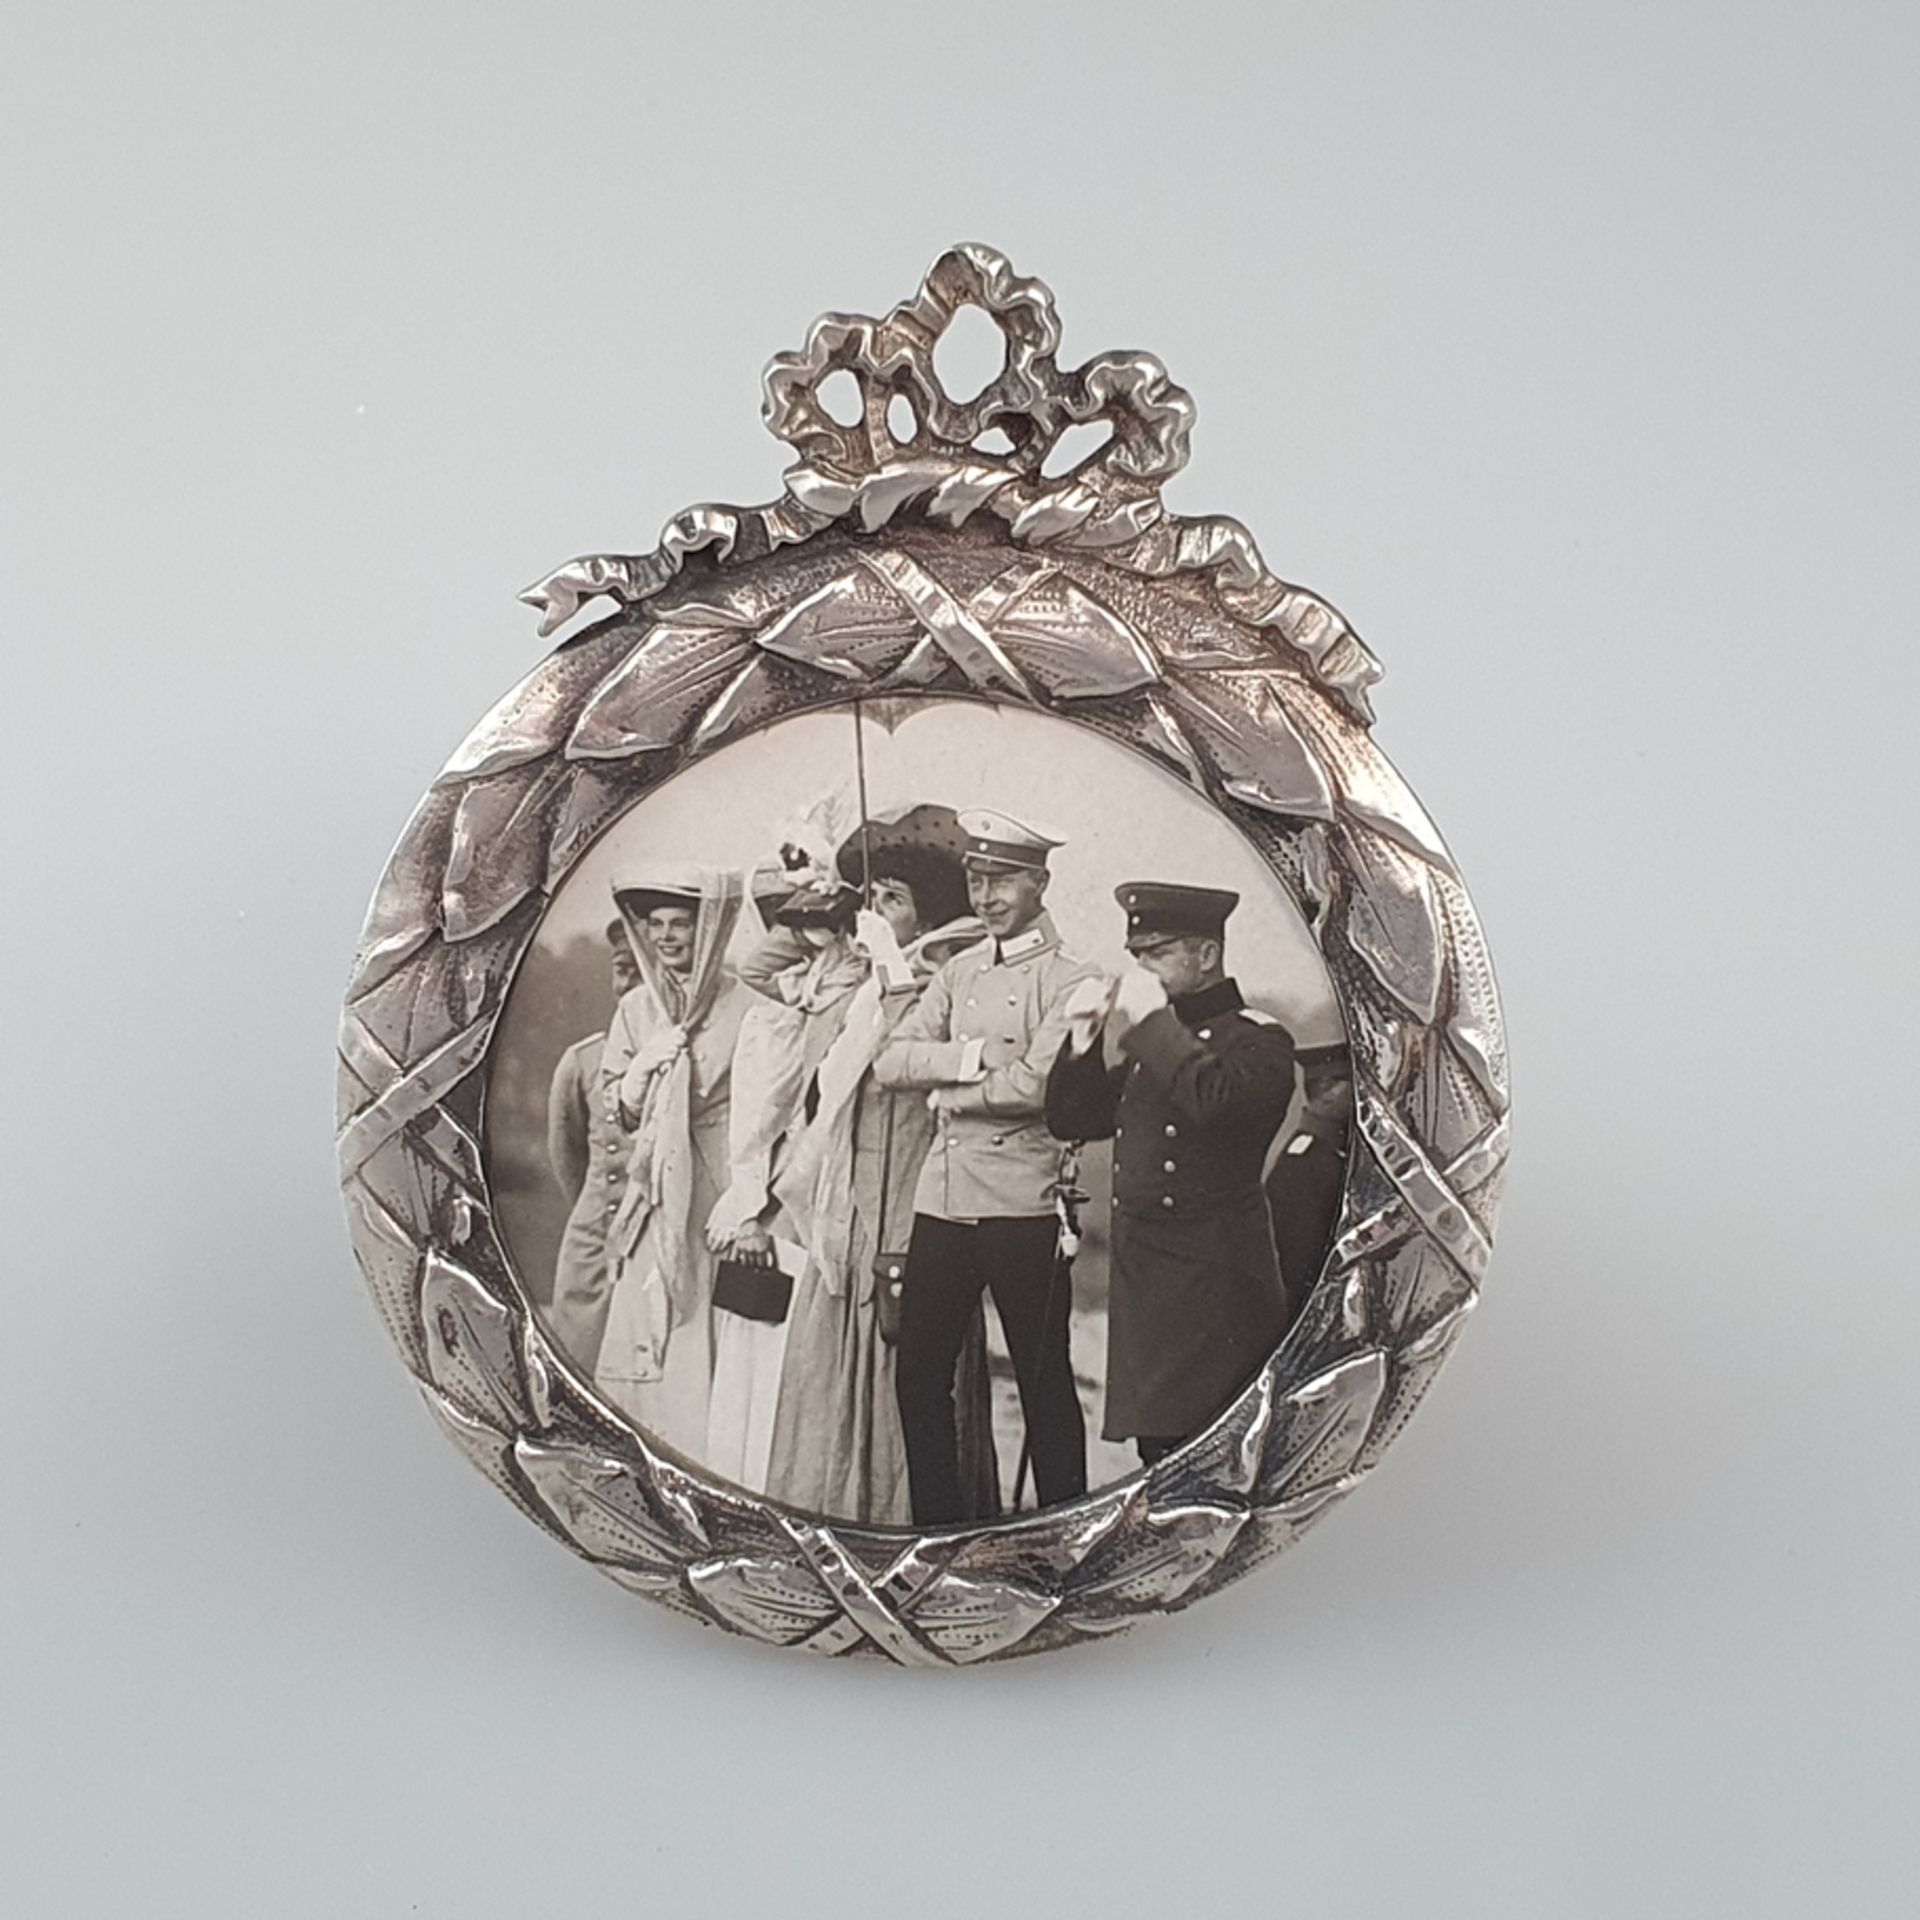 Miniatur-Standrahmen aus Silber - deutsch, nach 1900, Tondo mit Lorbeerfeston als Rahmenleiste, Bek